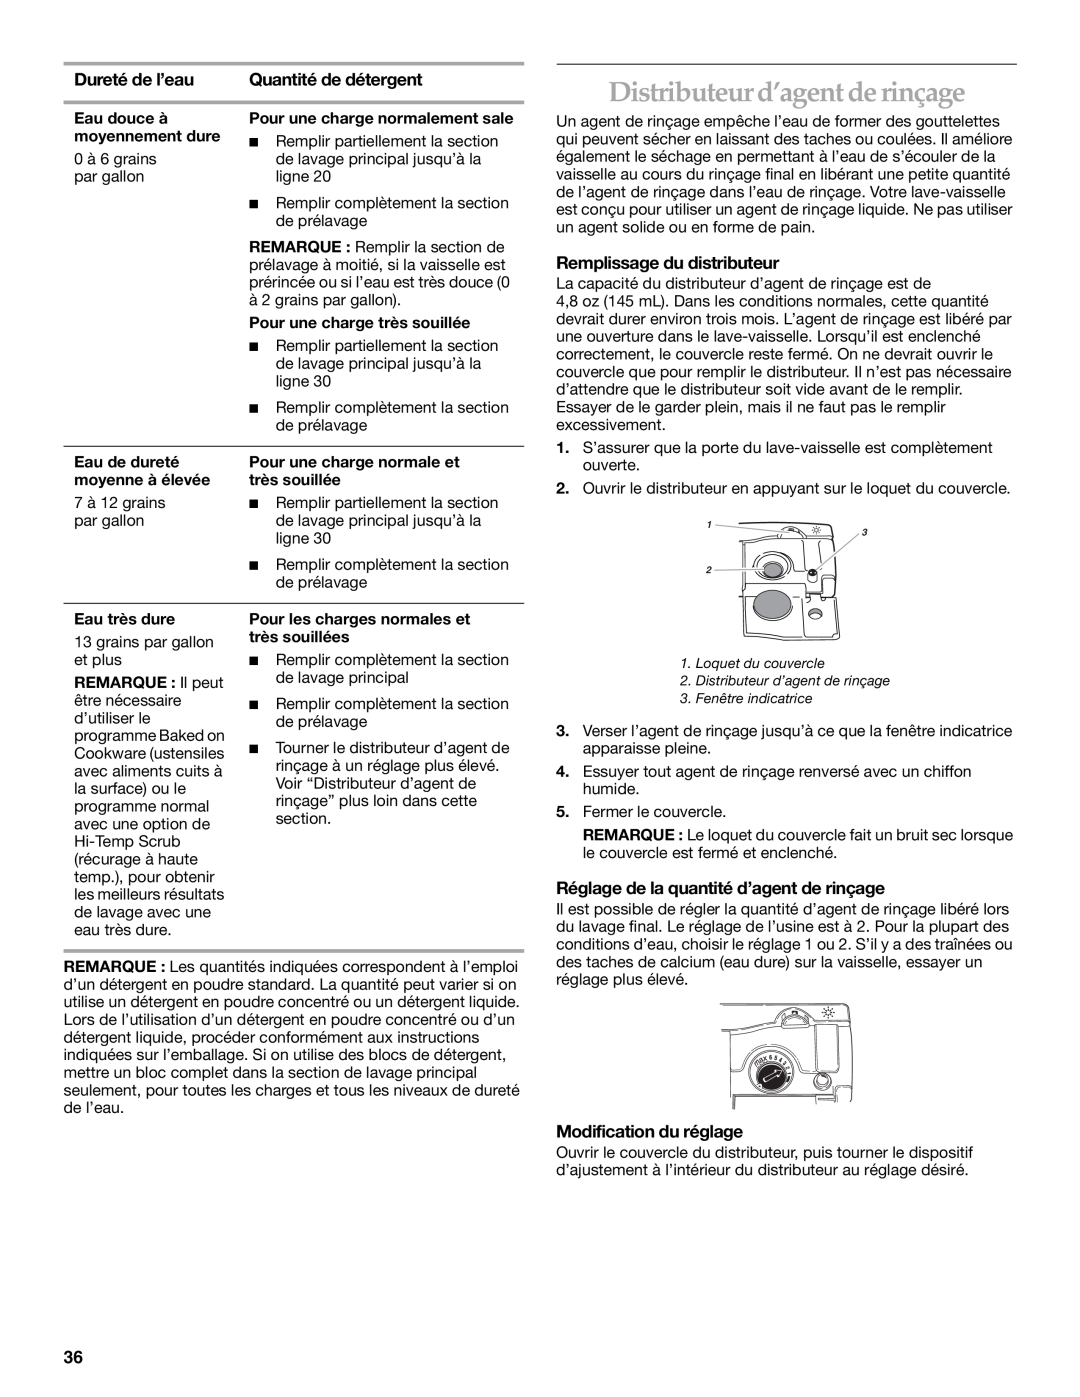 KitchenAid KUDS01DL manual Distributeur d’agent de rinçage, Dureté de l’eau, Quantité de détergent, Modification du réglage 